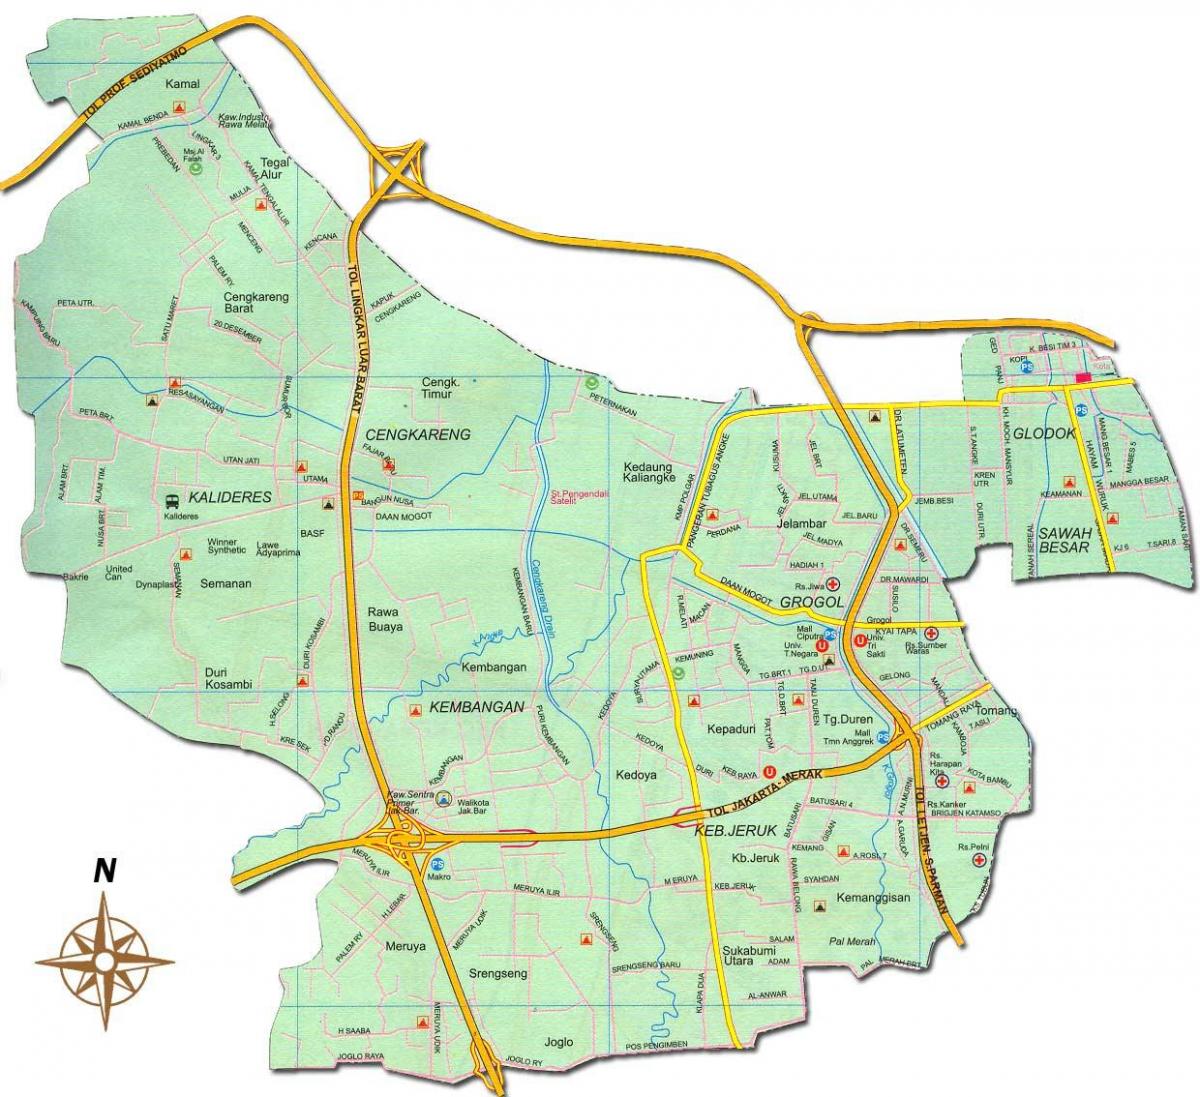 جکارتہ barat نقشہ